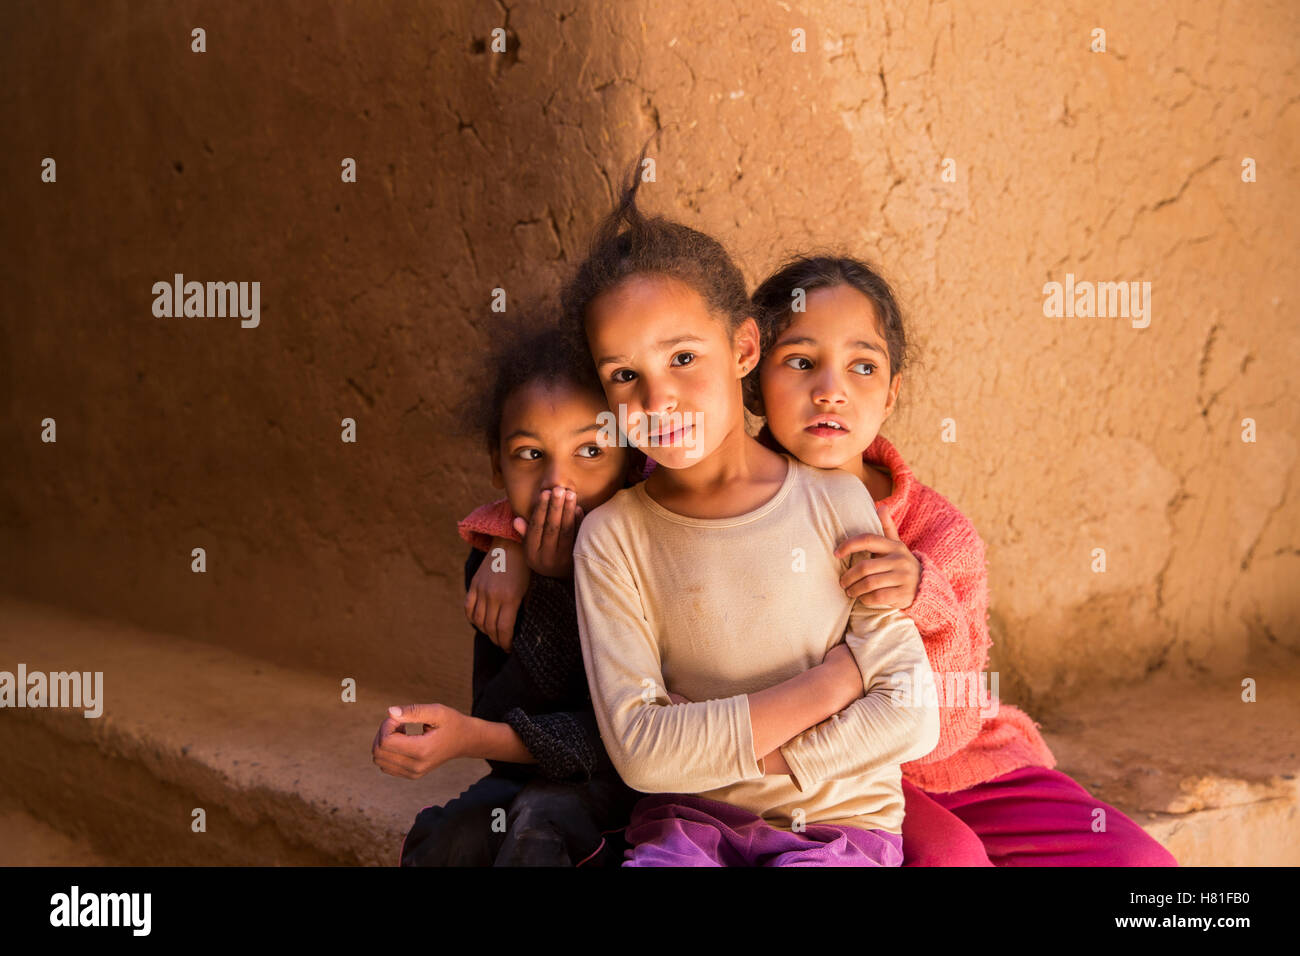 Marokko, Tinejdad, Todra-Tal, Ksar El Khorbat, Kinder posieren Stockfoto